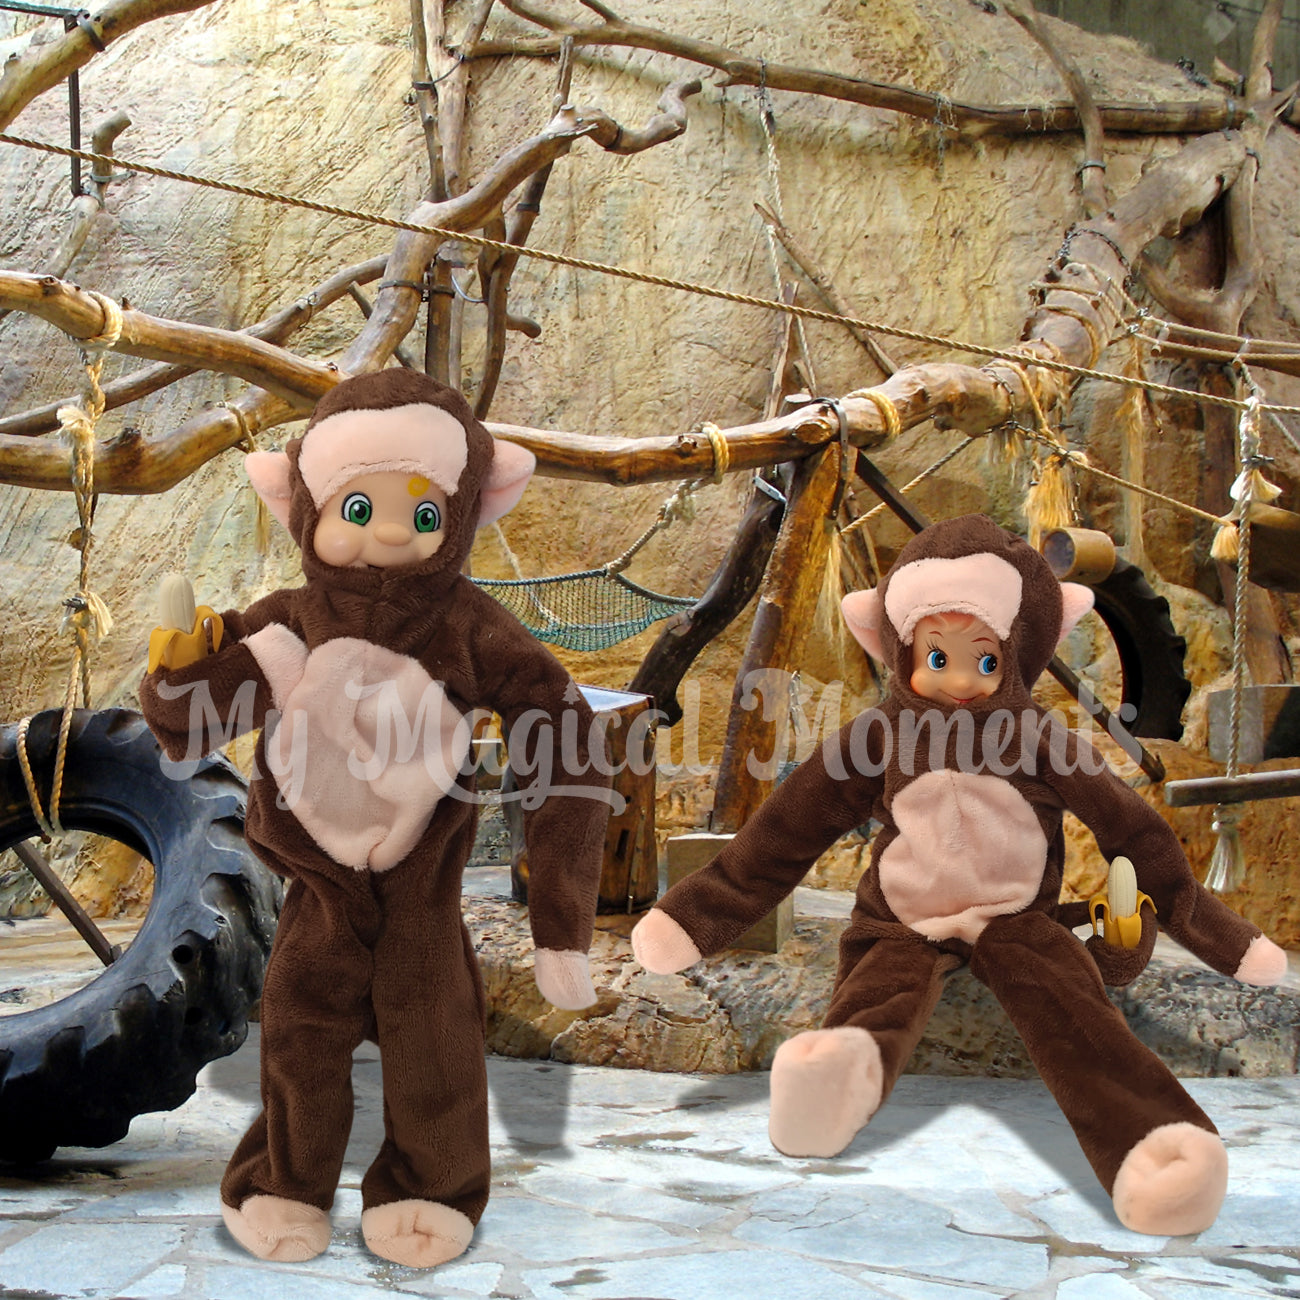 elves dressed as monkeys in a zoo